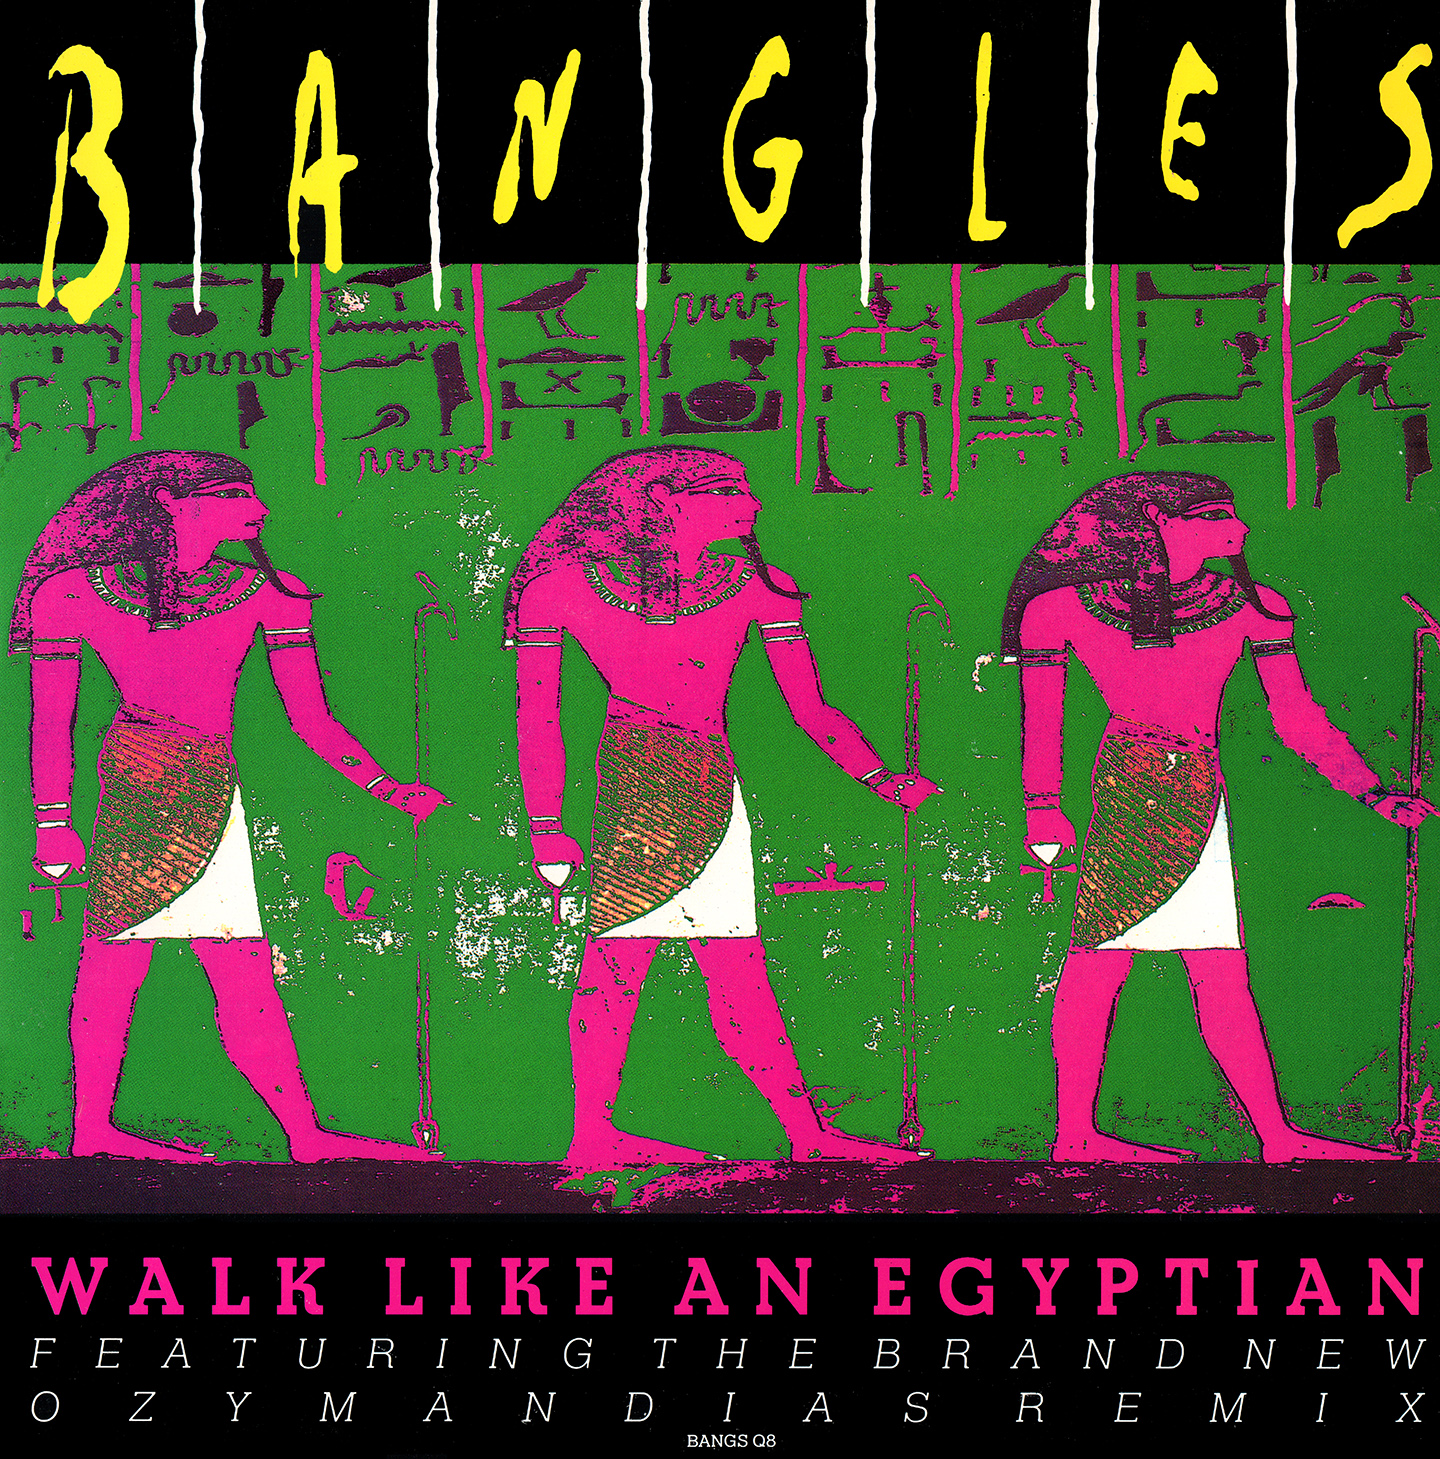 Bangles walk like. Bangles walk like an Egyptian обложка. The Bangles - walk like an Egyptian (1986). Bangles обложка альбома. Walk like Egyptian группа.